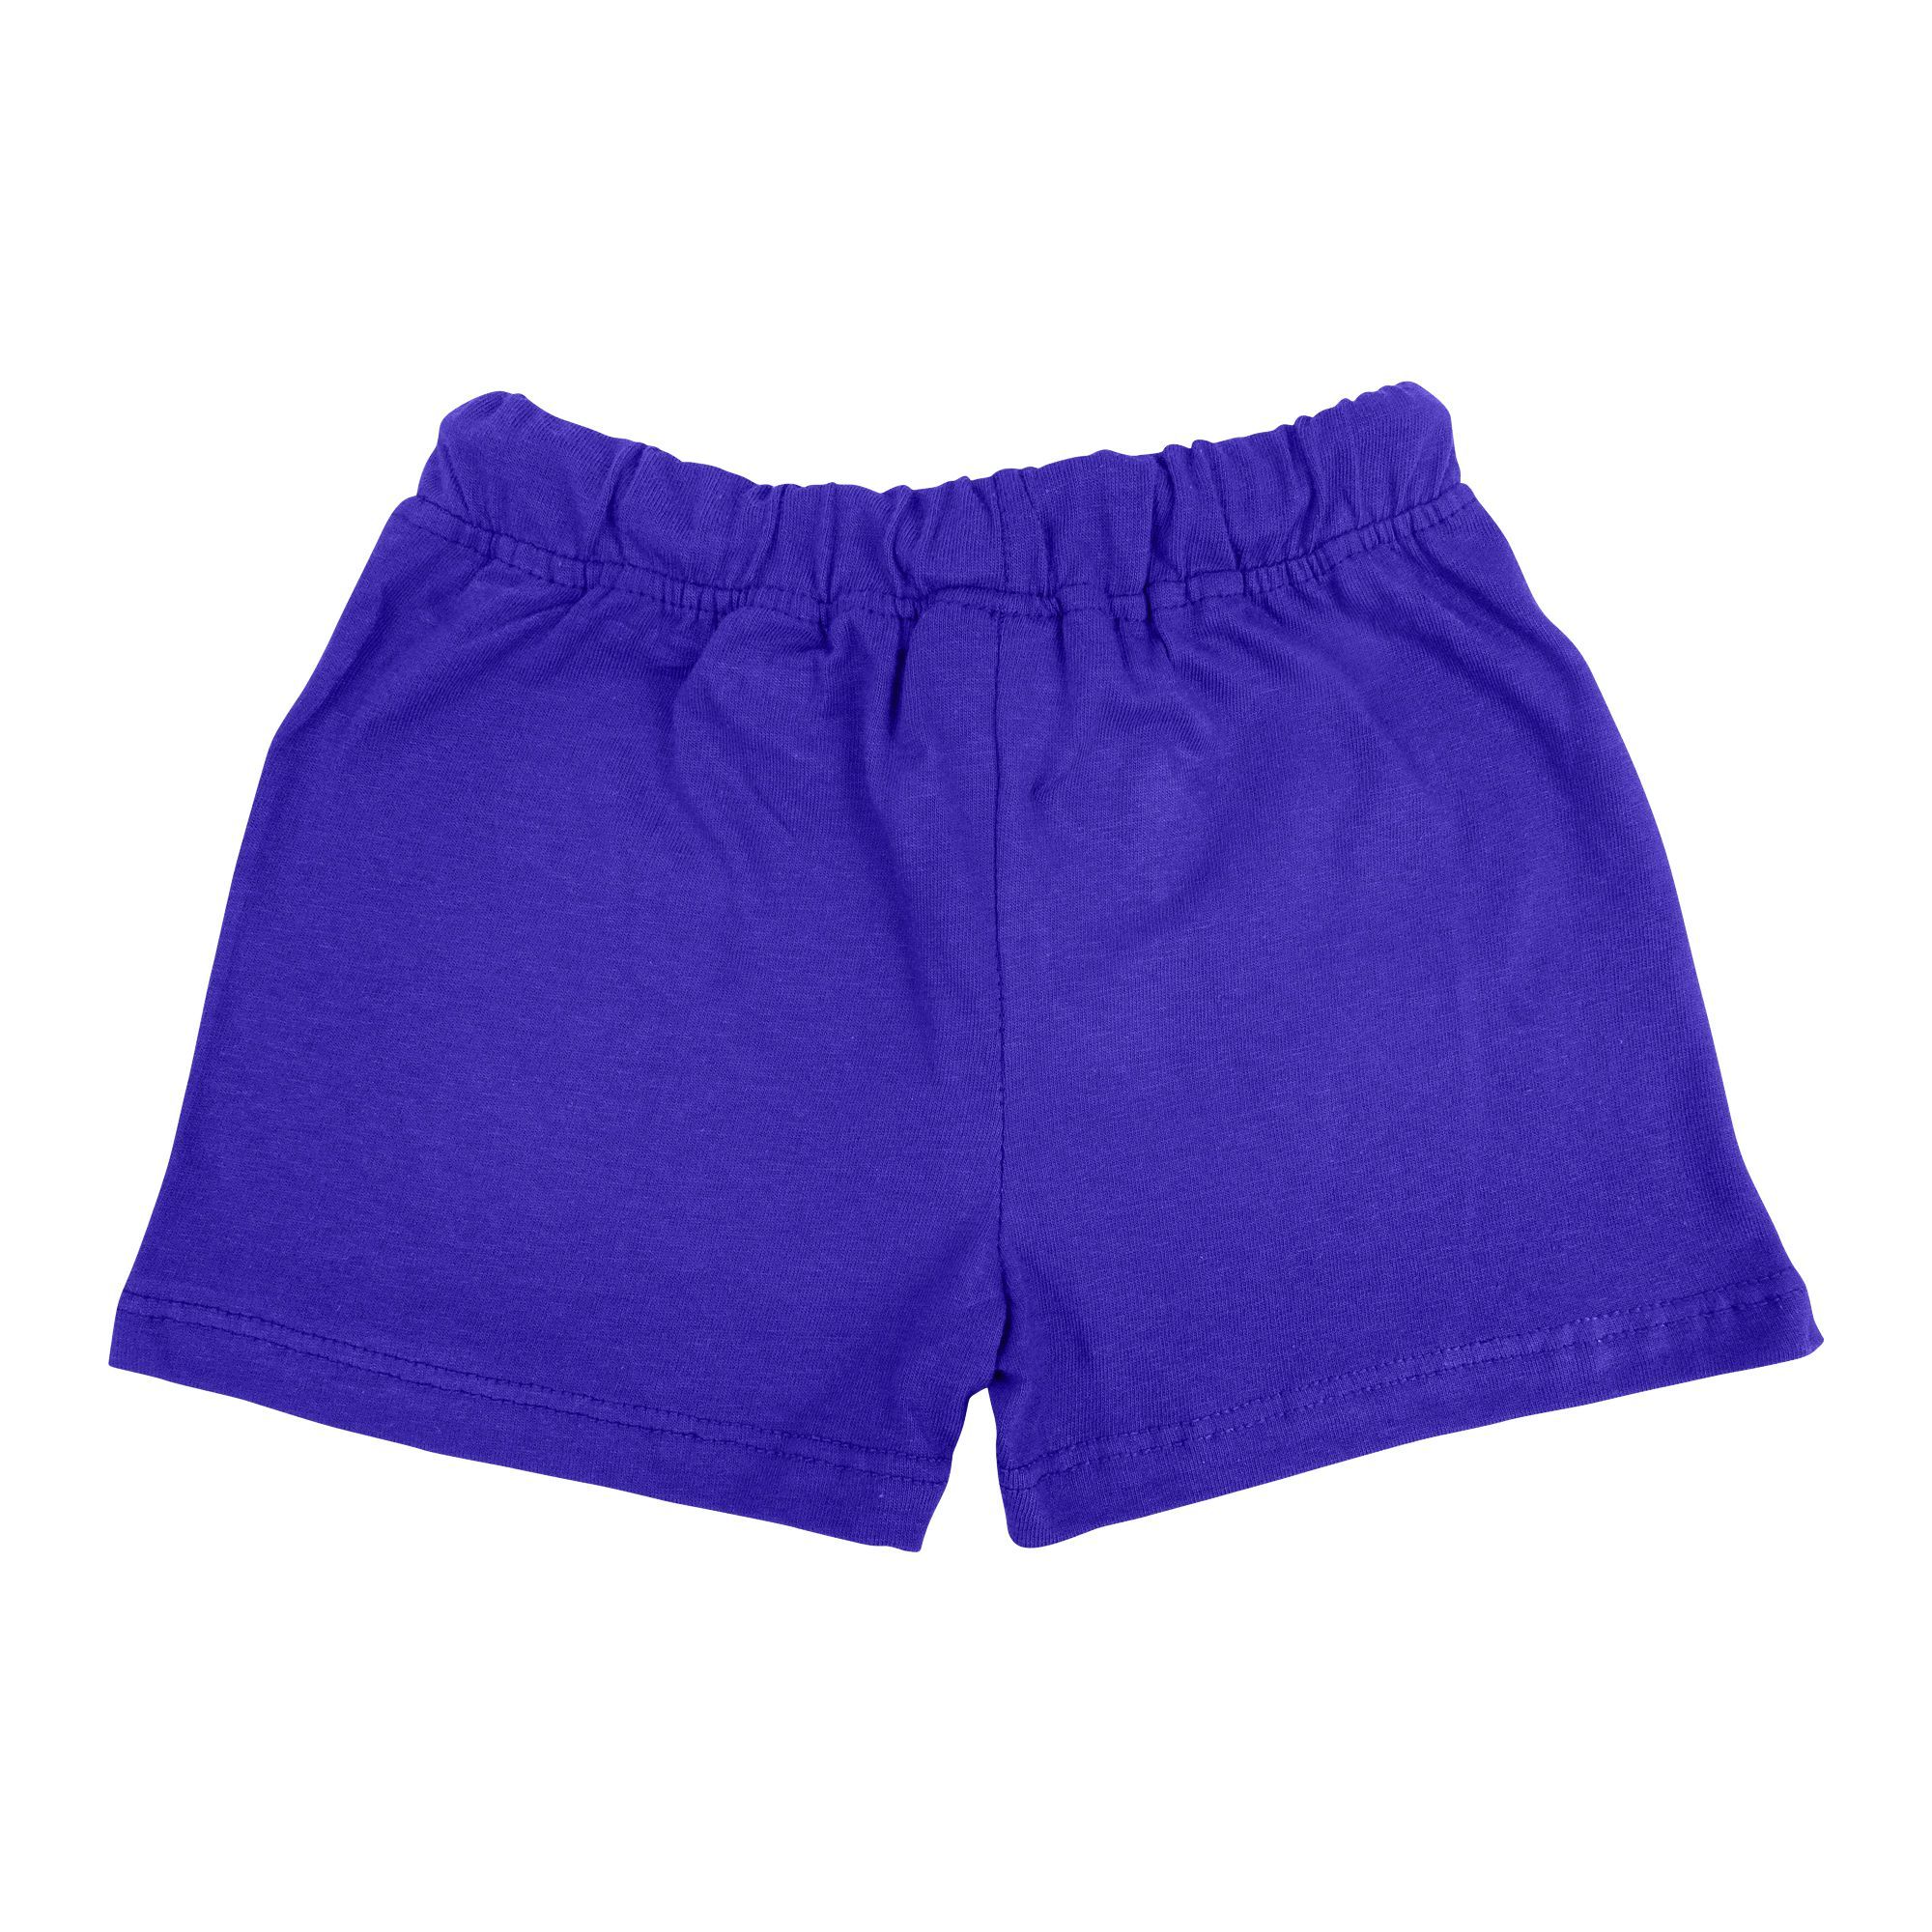 Buy Baby Nest Summer Shorts For Boys, Dark Blue Pineapple Online at ...